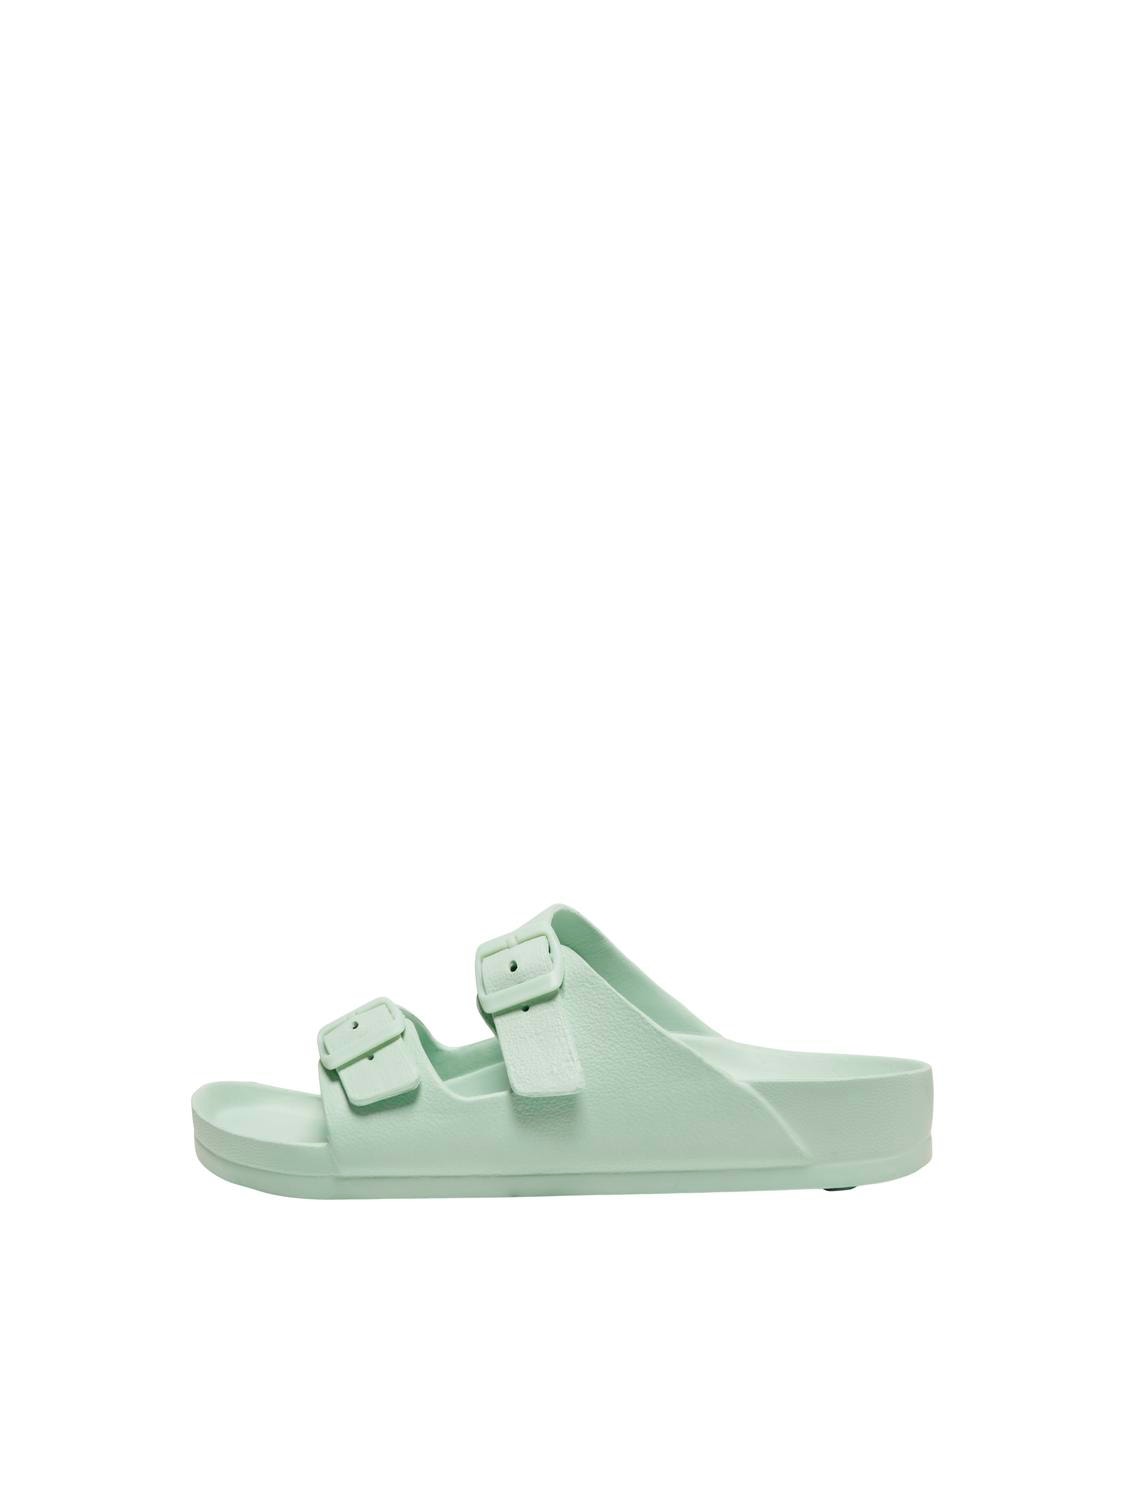 ONLY Adjustable strap Sandal -Subtle Green - 15316868